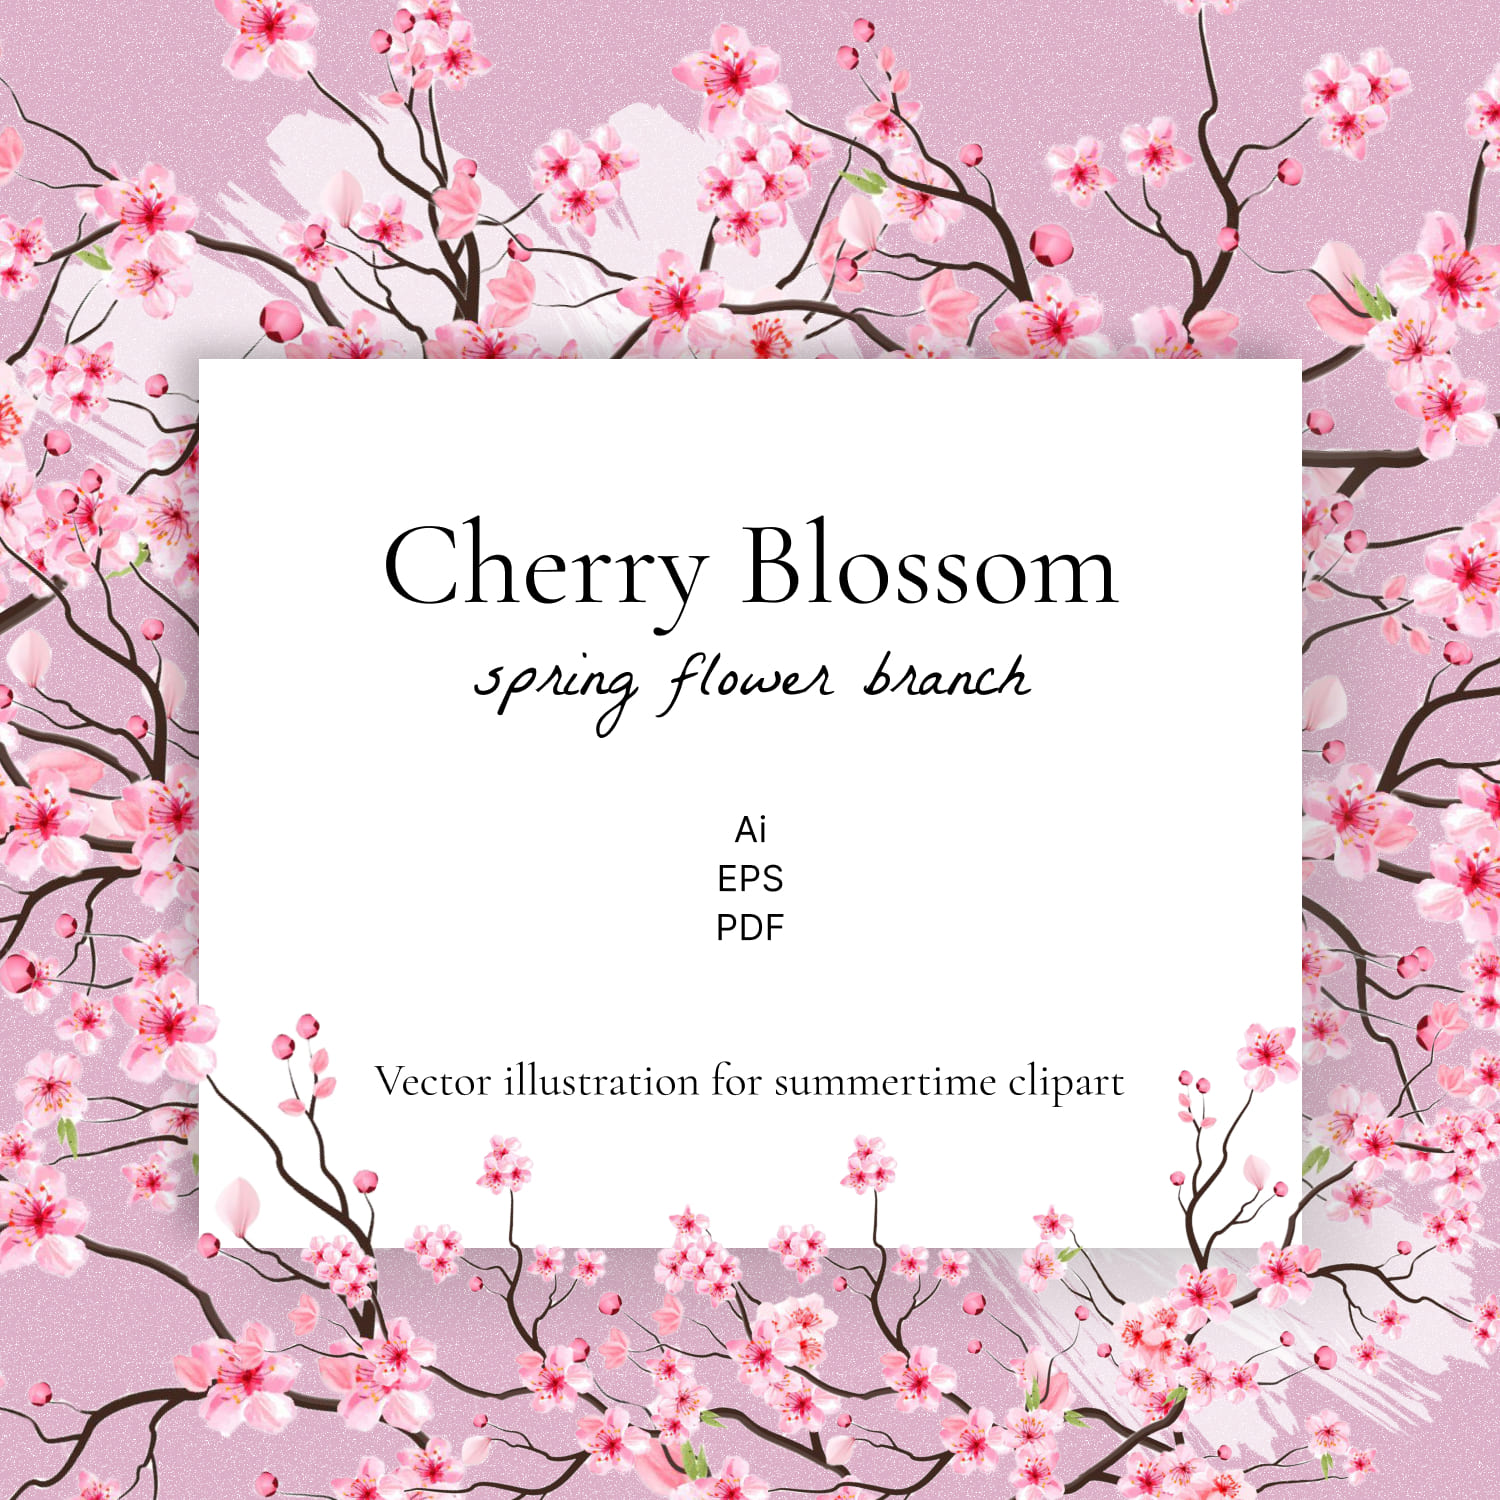 Cherry Blossom Spring Flower Branch.